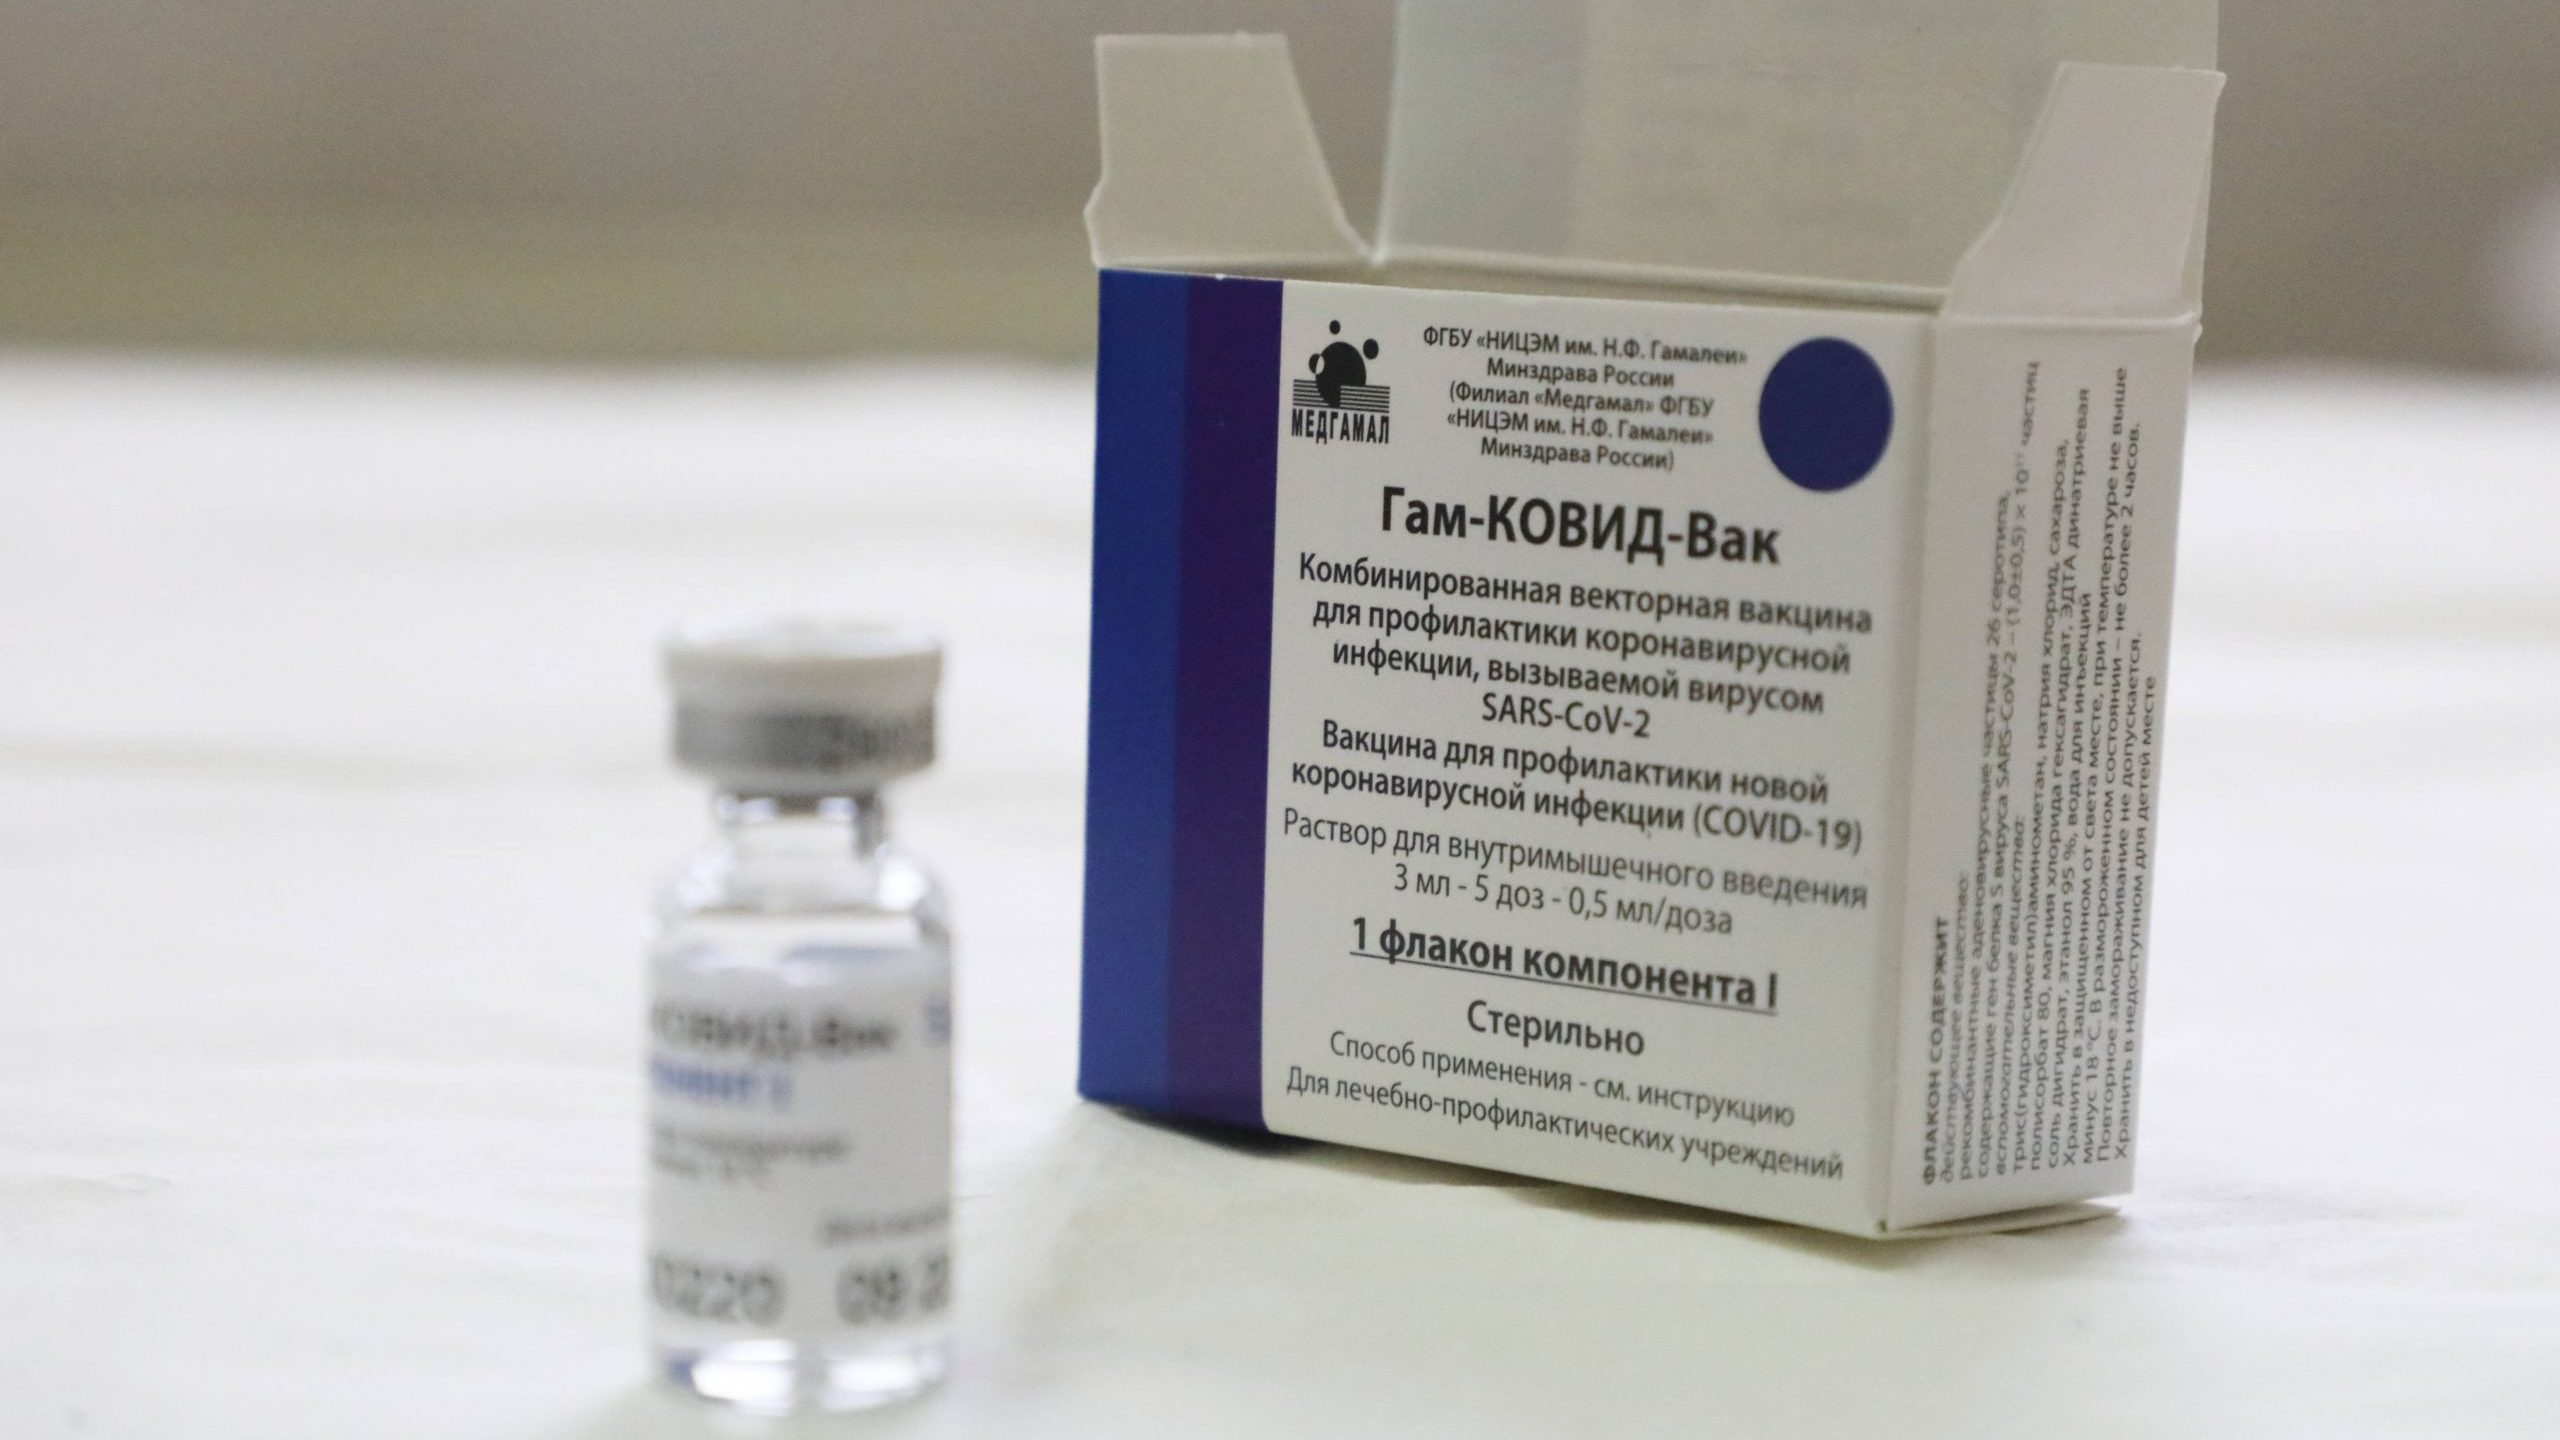 Odluka premijera Slovačke da tajno kupi rusku vakcinu dovela do krize vlade 1